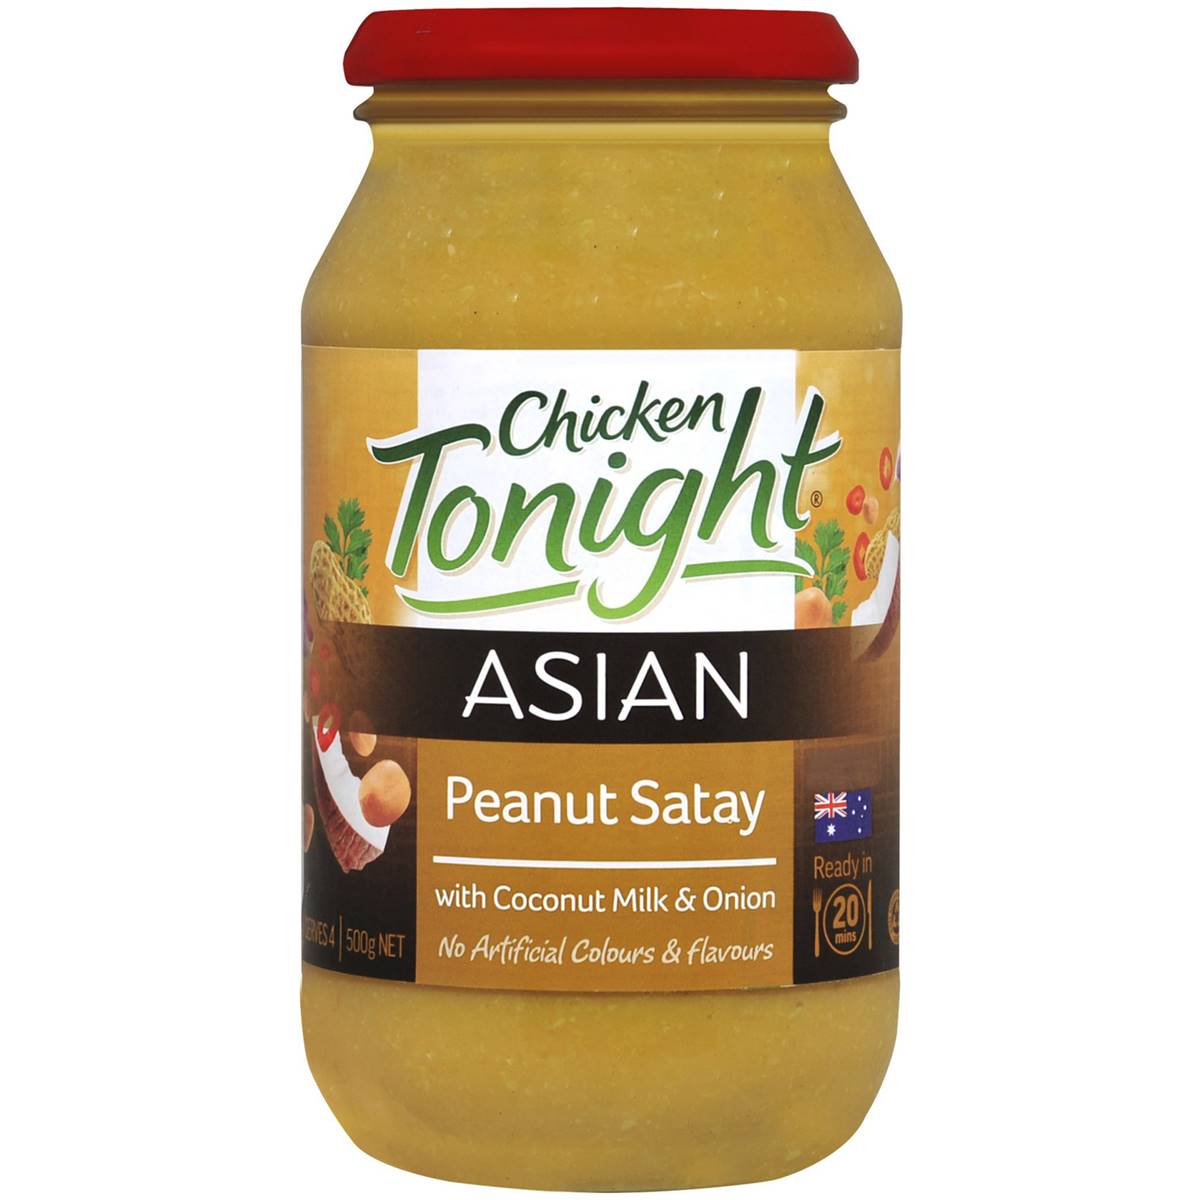 Asian Tonight Simmer Sauce Peanut Satay